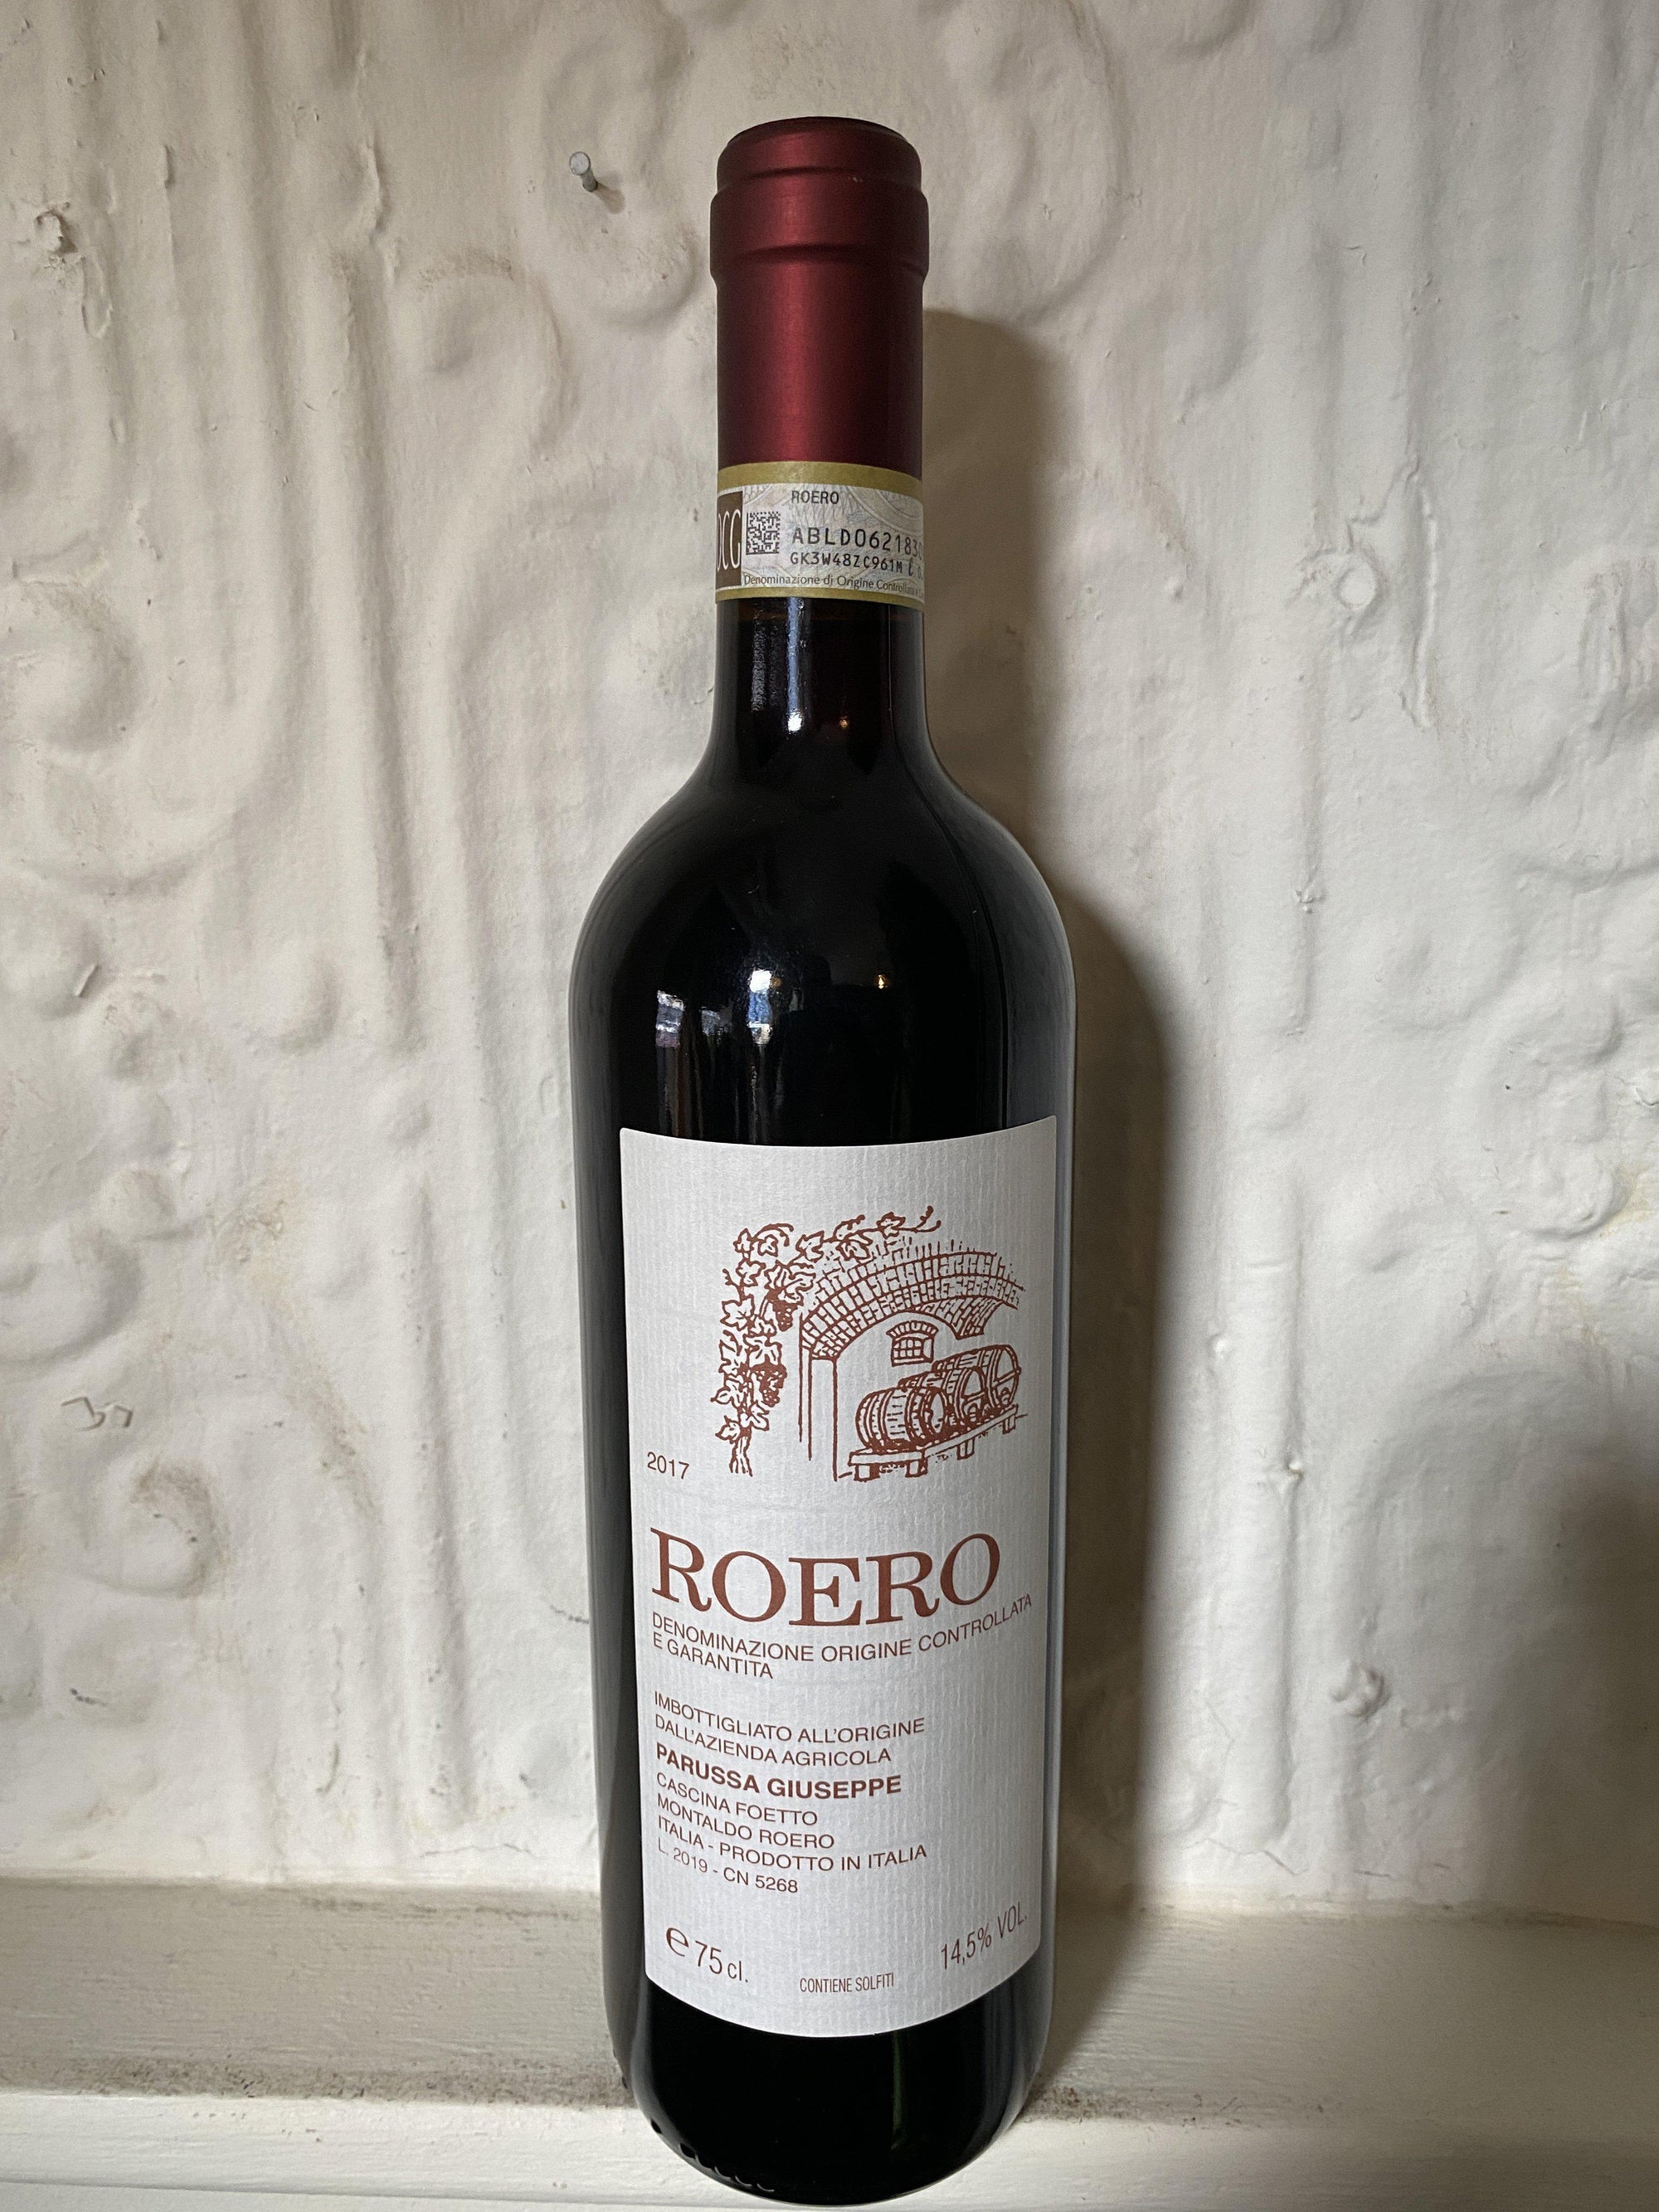 Nebbiolo Roero, Parussa Guiseppe 2017 (Piedmont, Italy)-Wine-Bibber & Bell